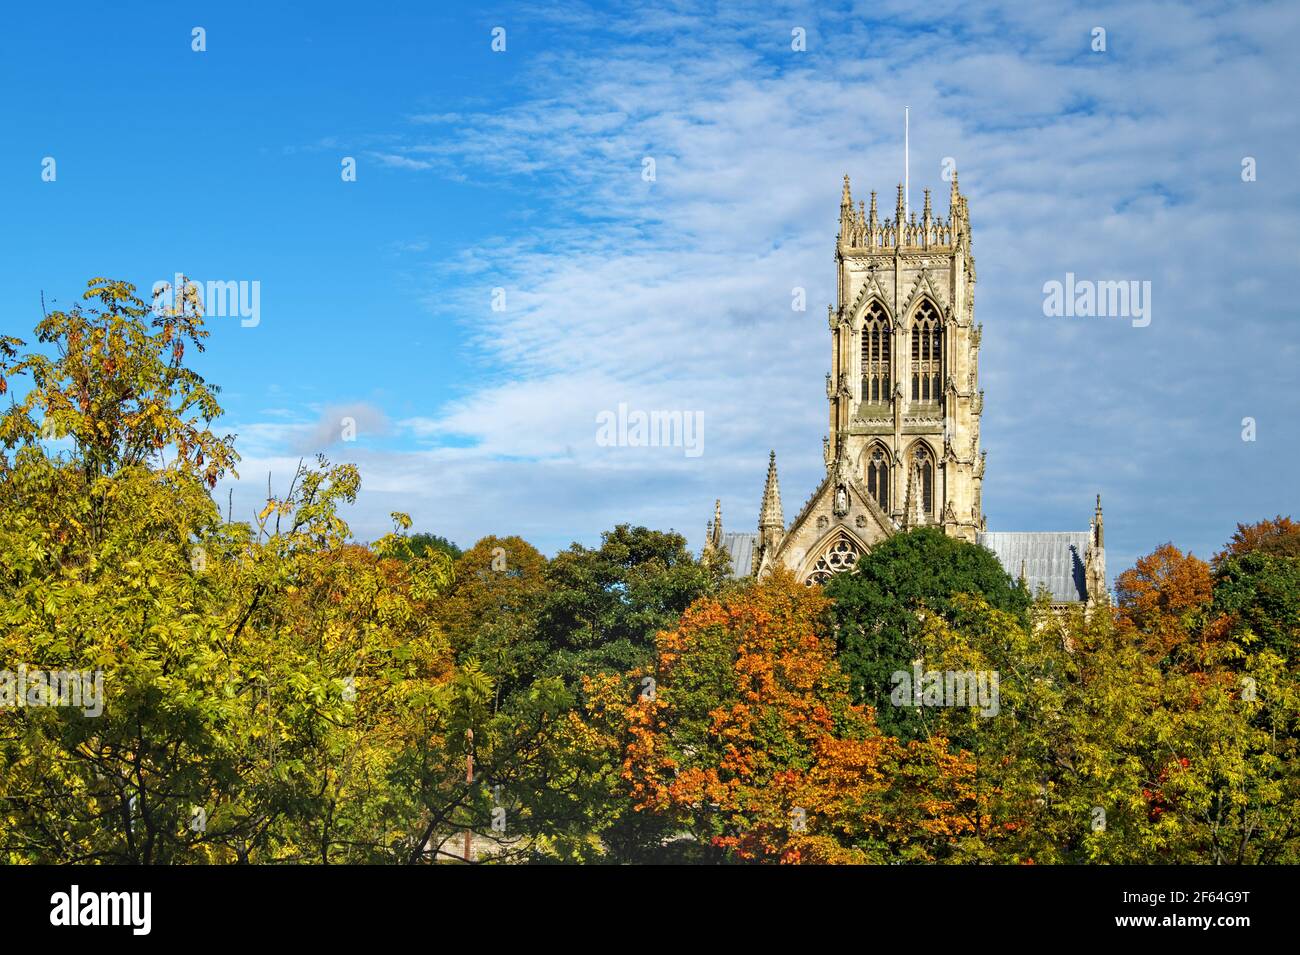 UK,South Yorkshire,Doncaster,la chiesa di San Giorgio Foto Stock